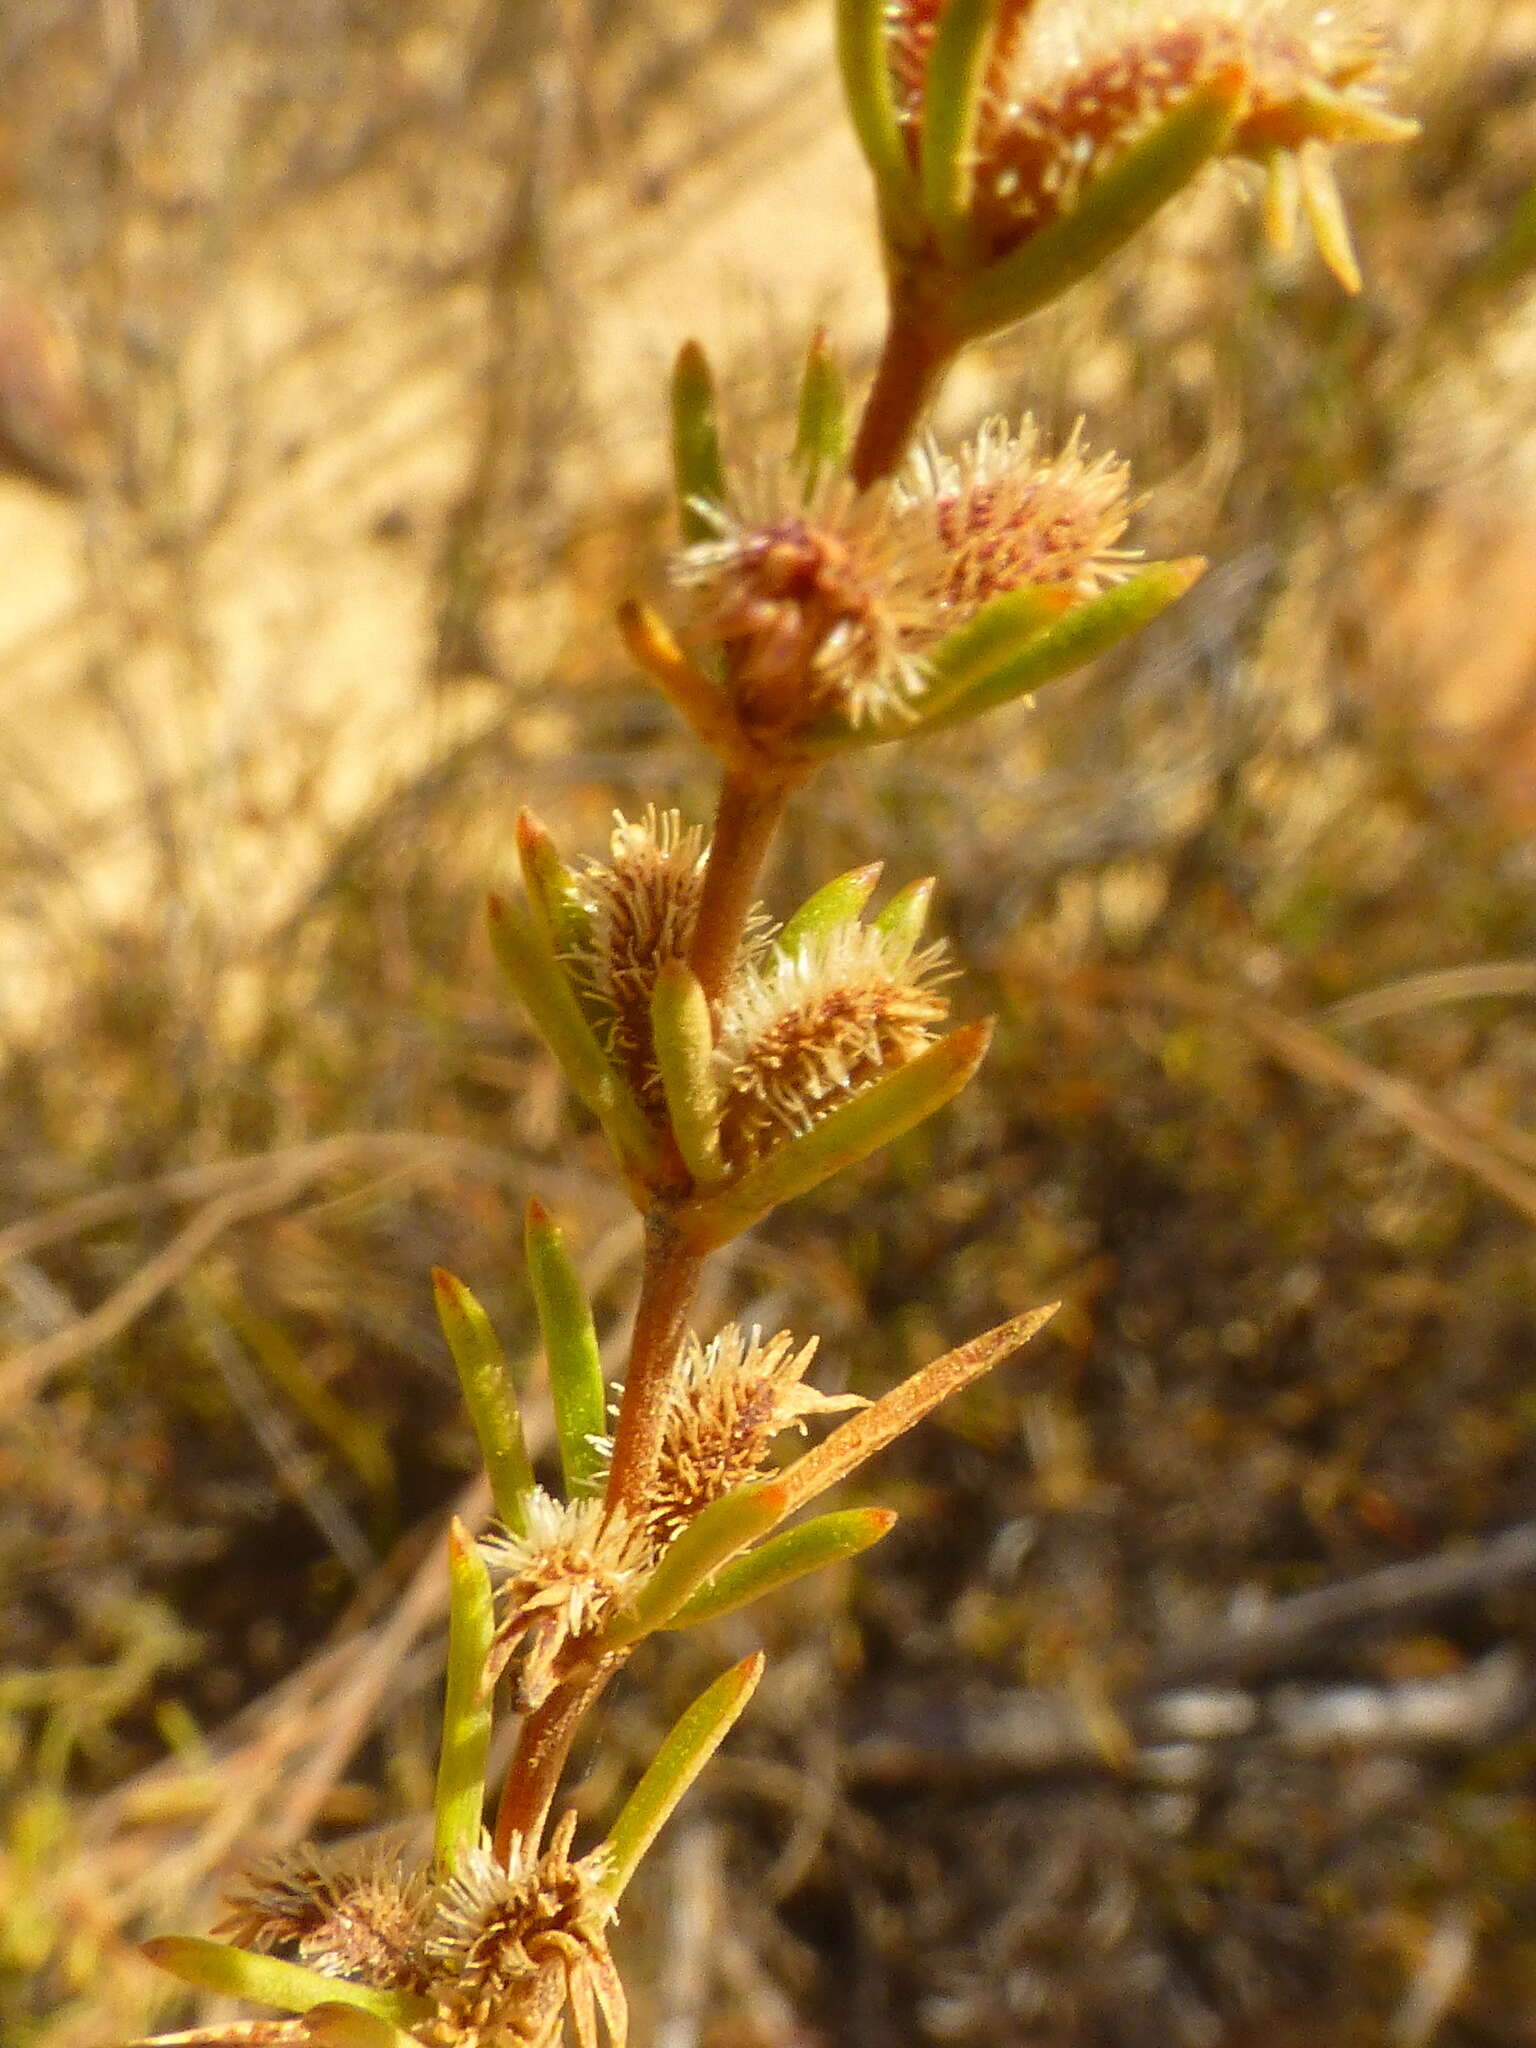 Image of Anthospermum bicorne Puff